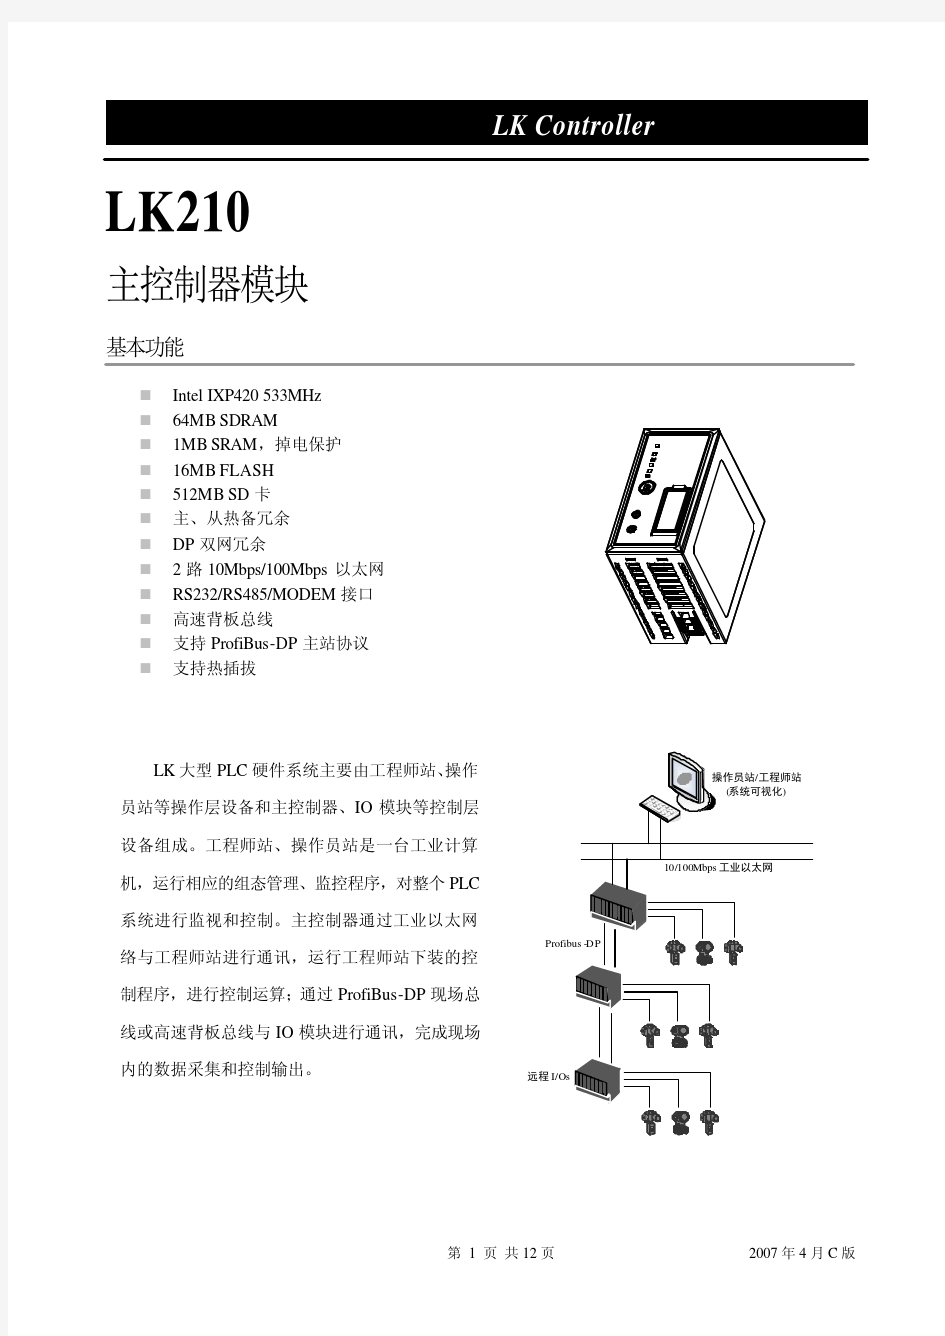 LK210 主控制器模块使用说明书